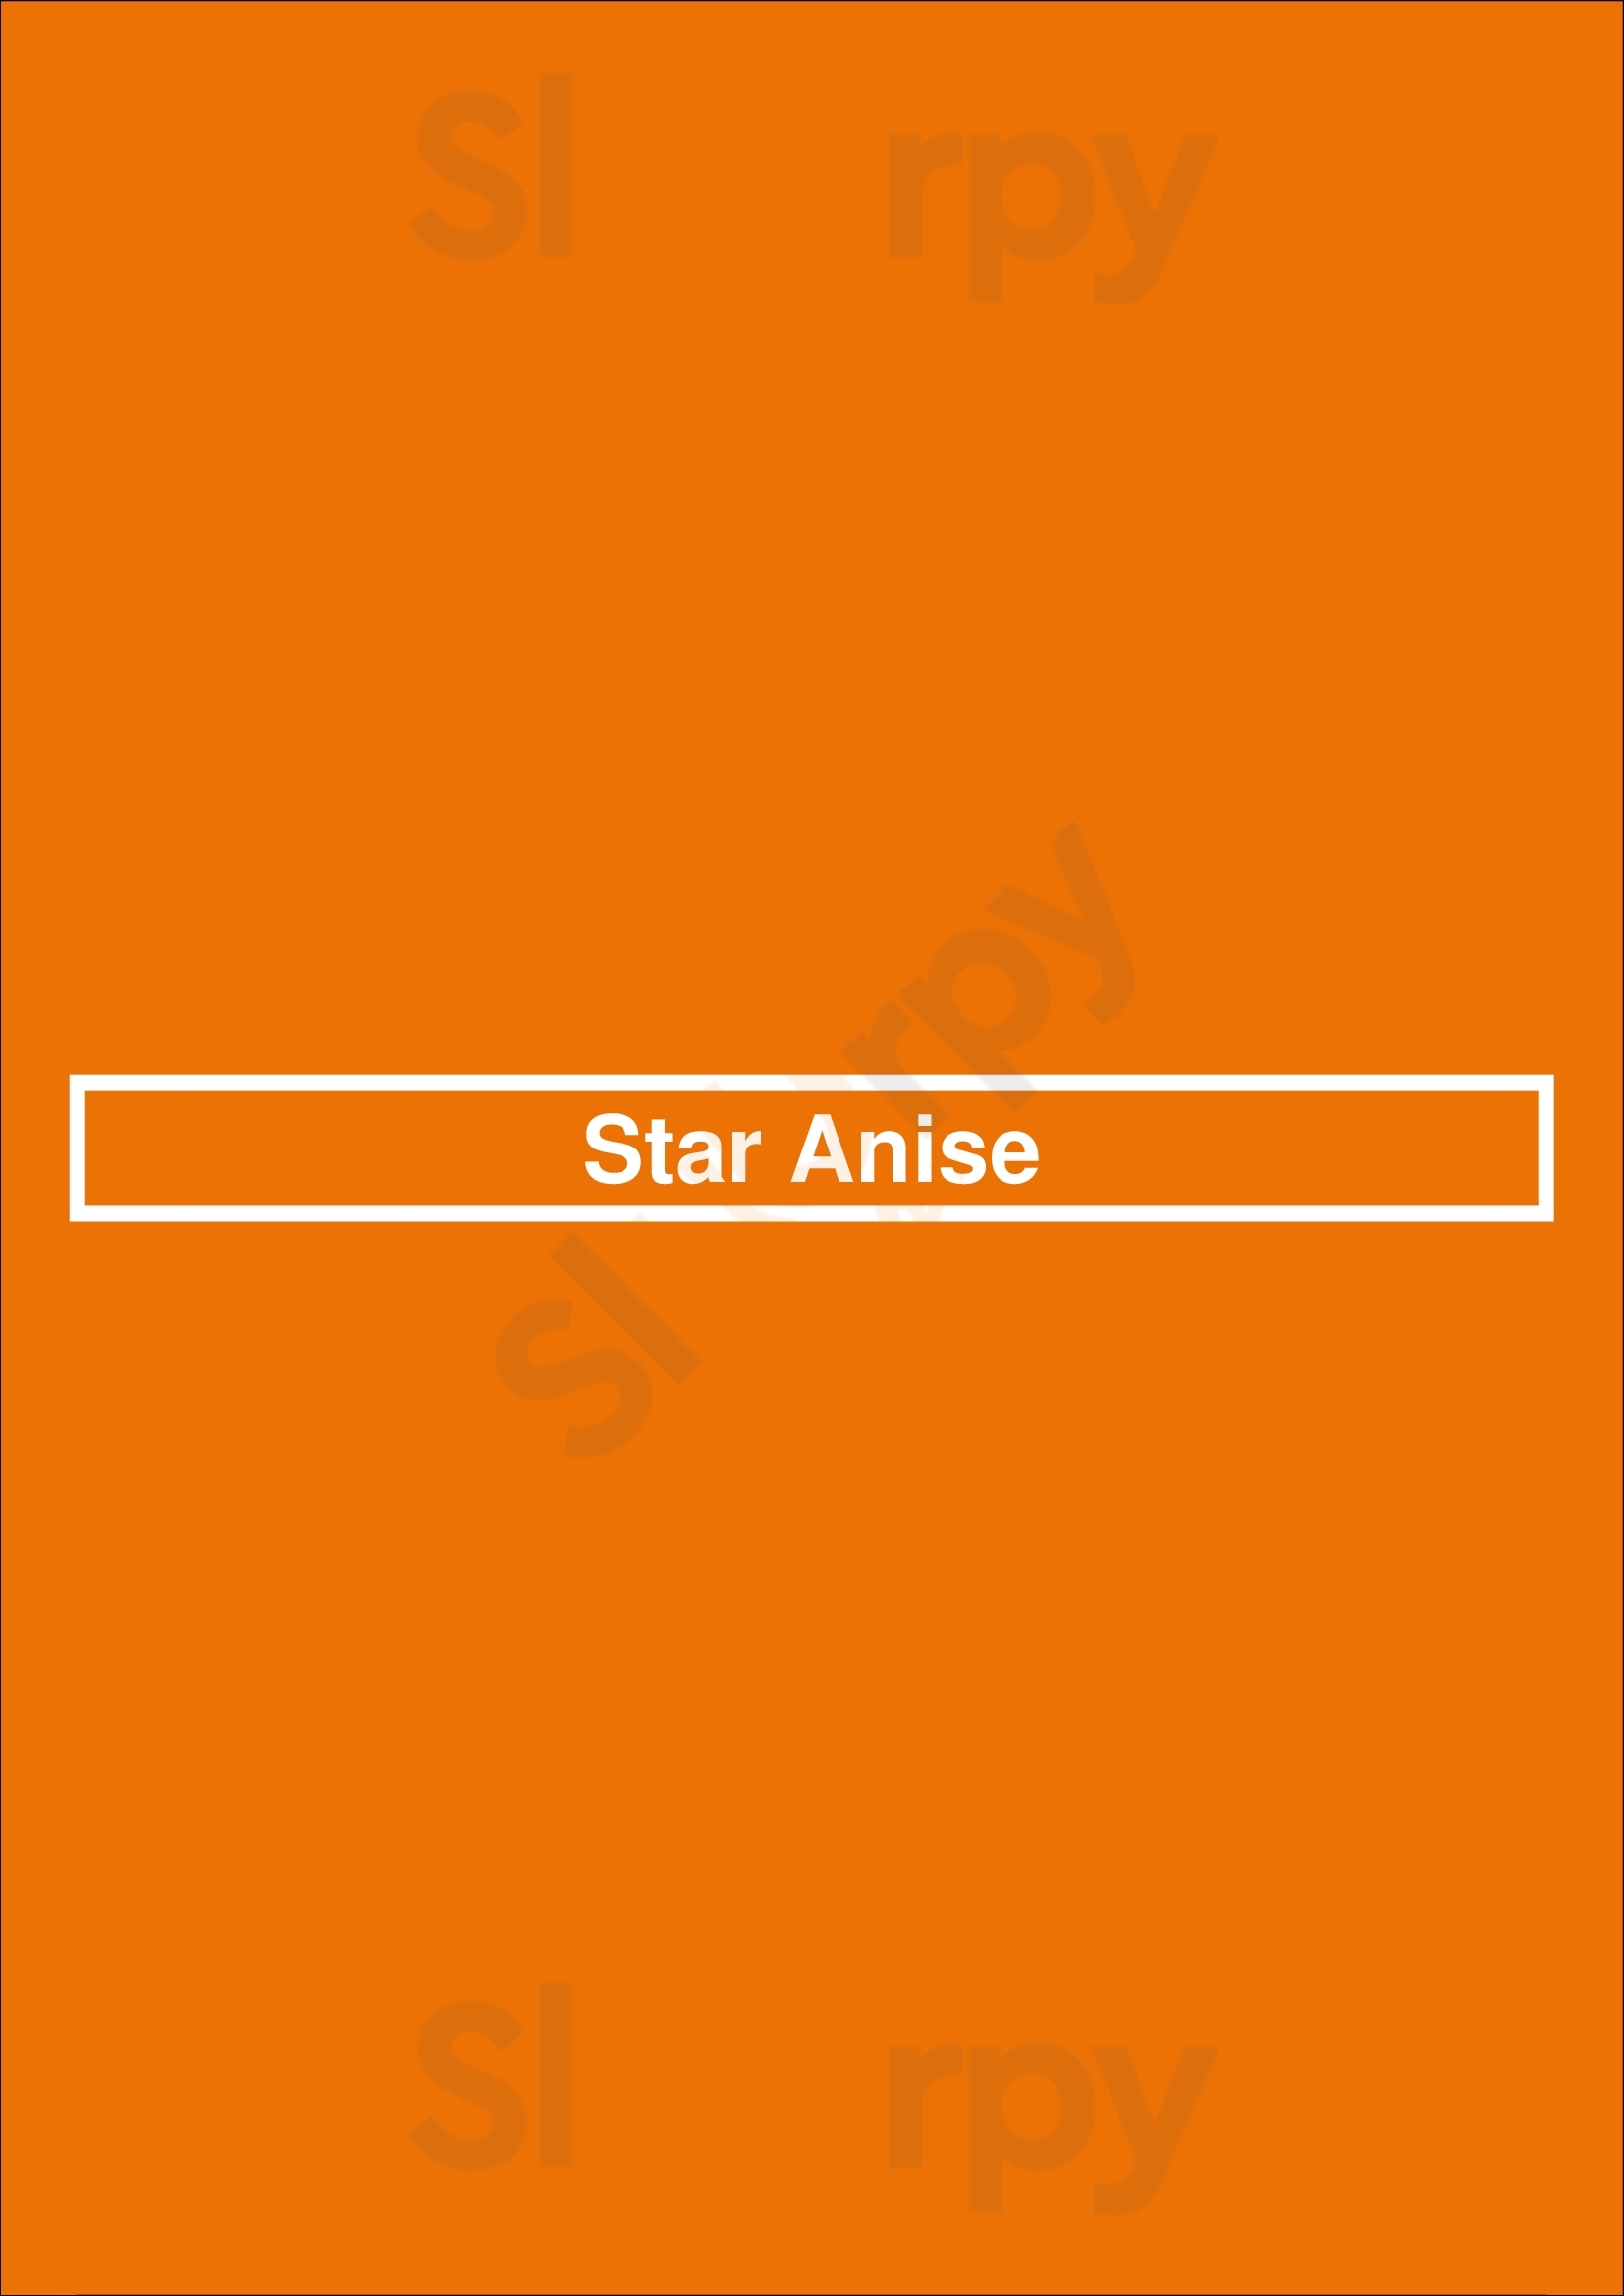 Star Anise Halifax Menu - 1